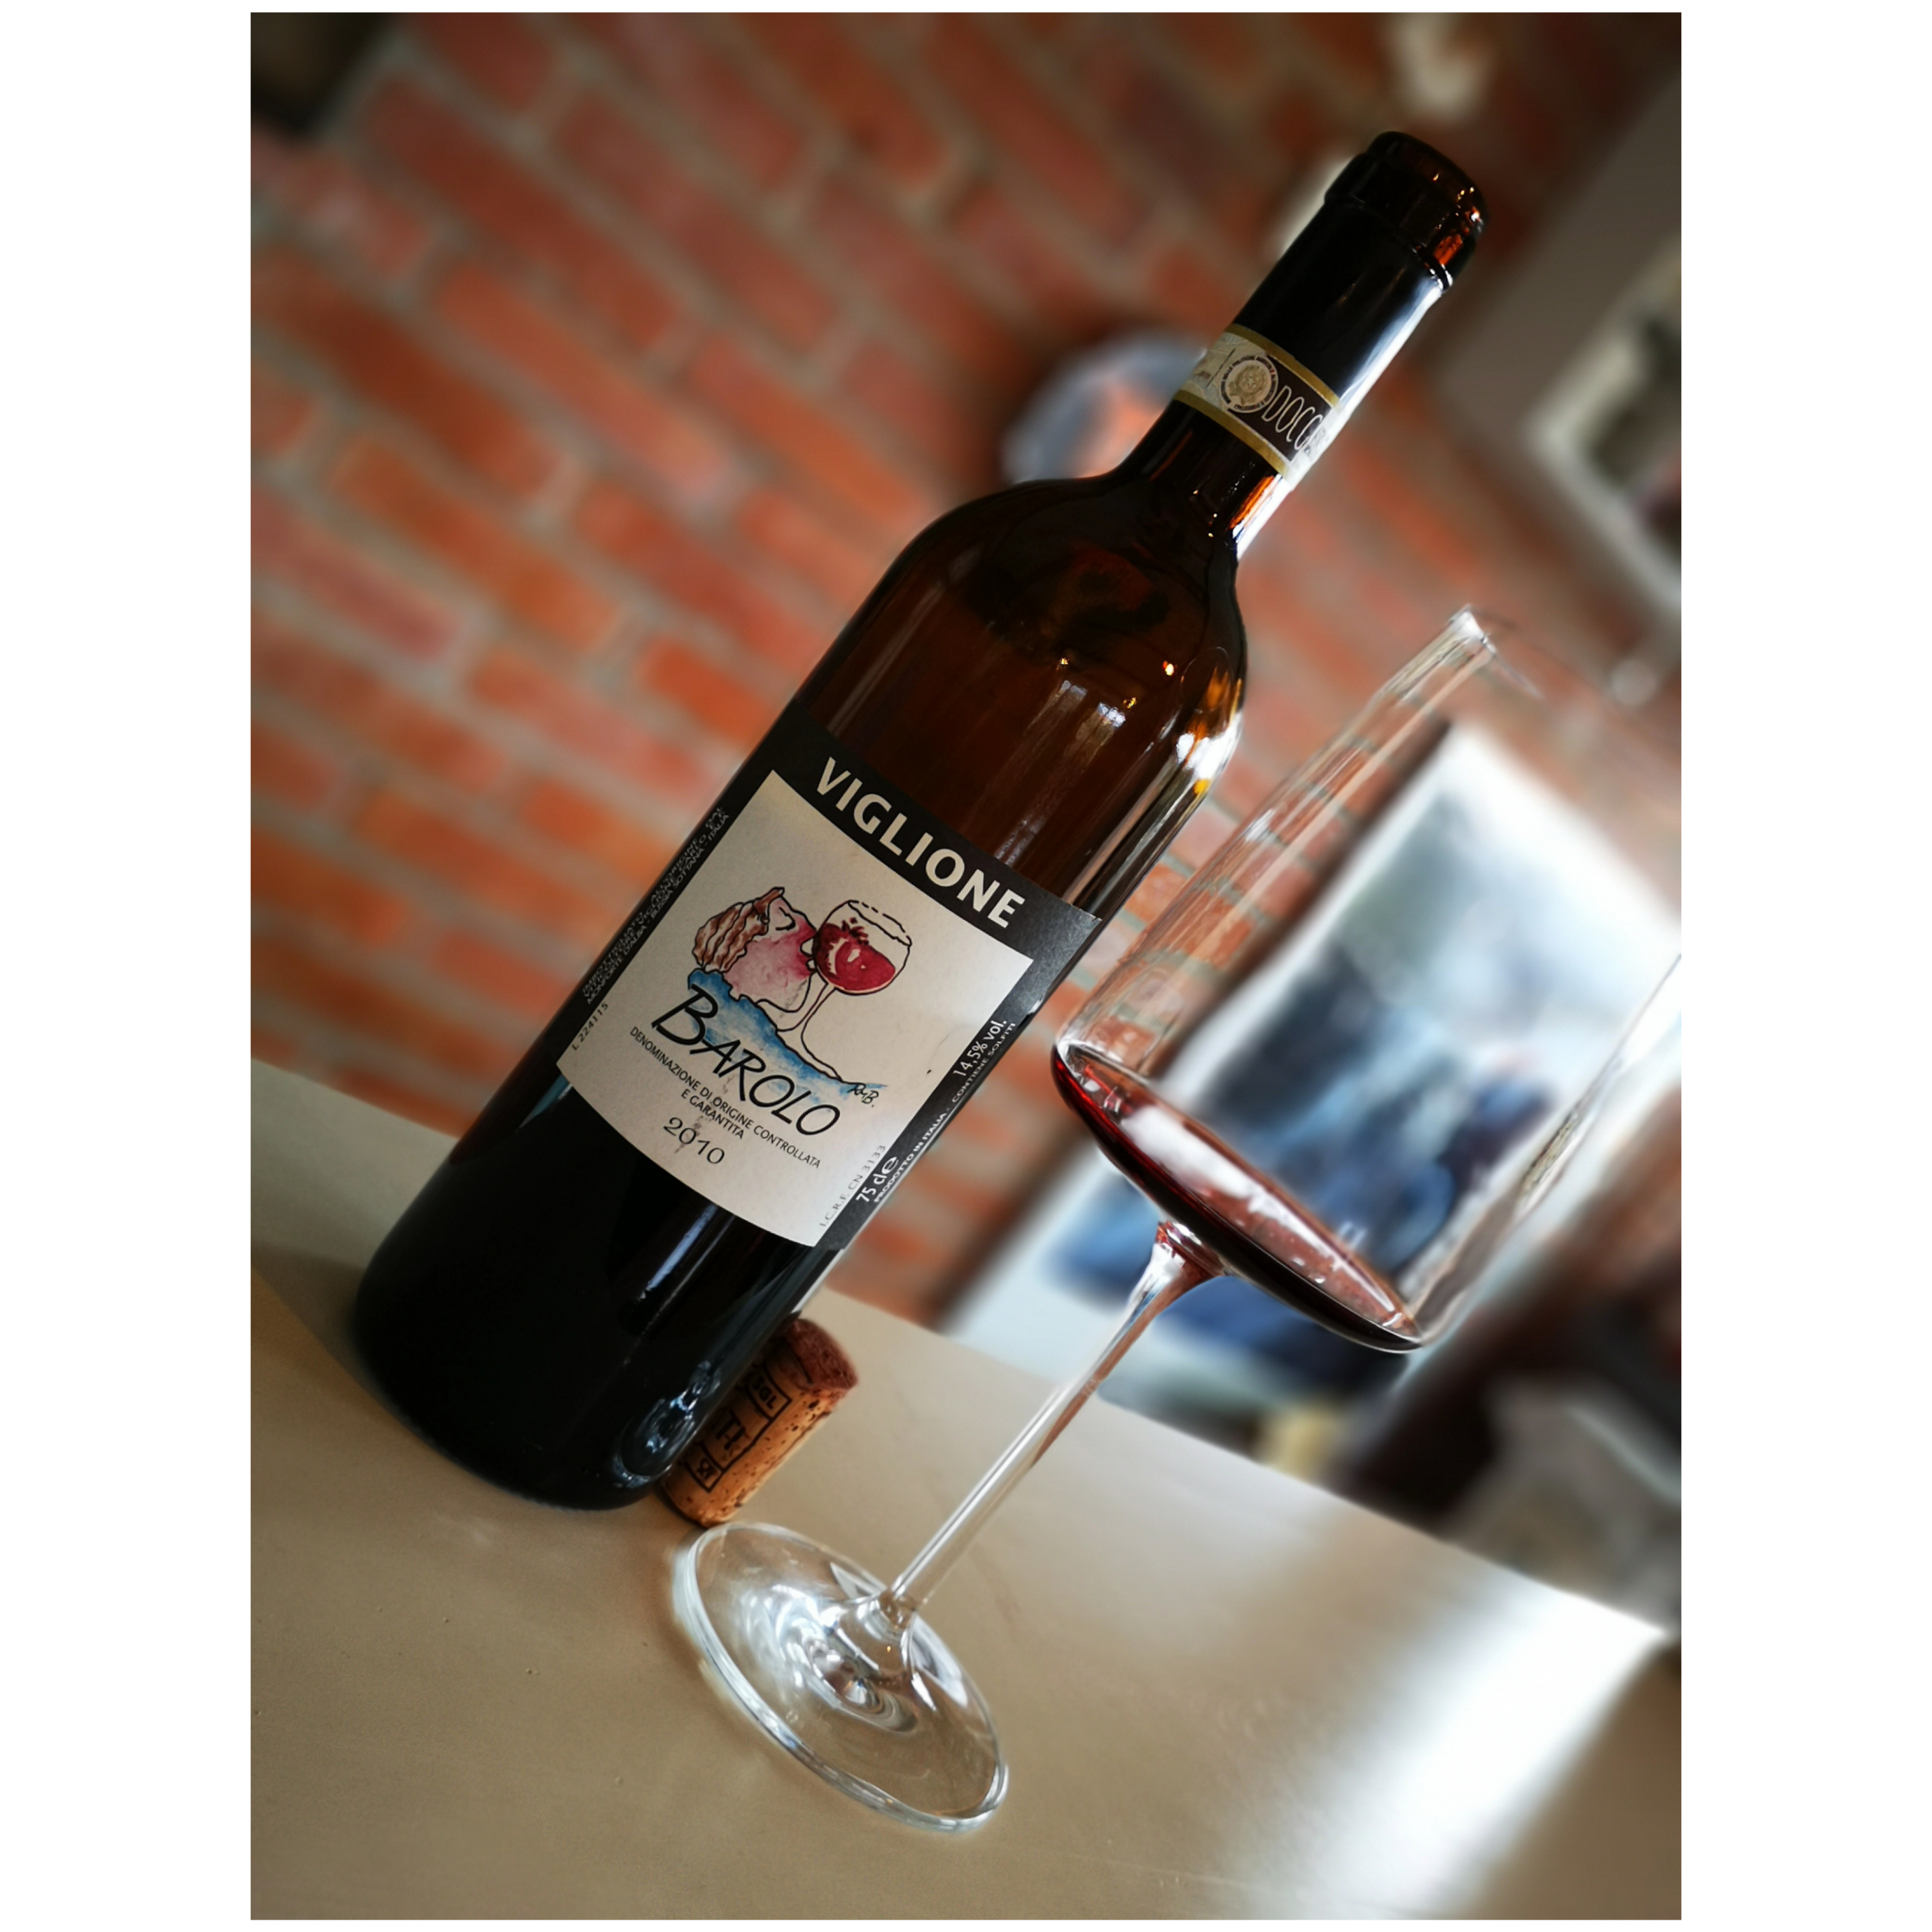 Enonauta/Degustazione di Vino #108 - review - Barolo 2010 - Viglione | Vino in una evidente fase di brillante evoluzione